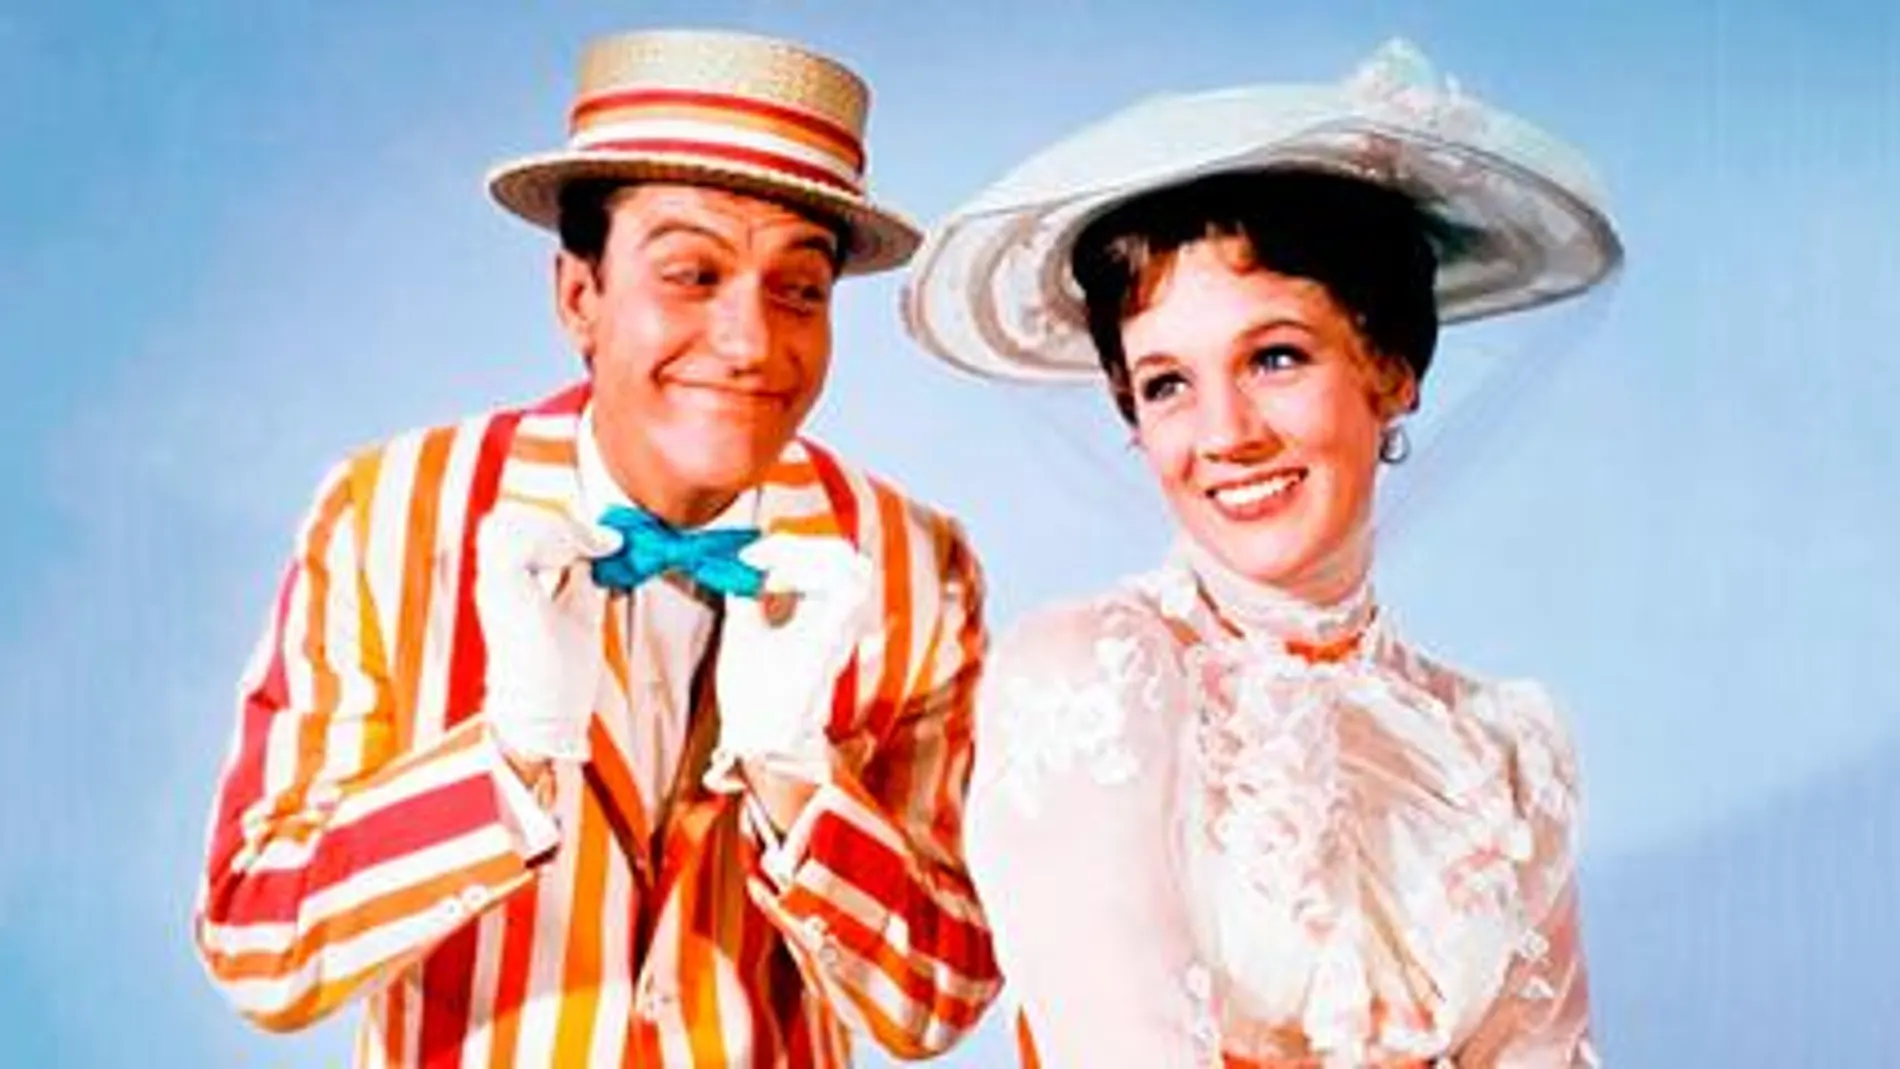 Dick Van Dyke y Julie Andrews en el cartel promocional de la película